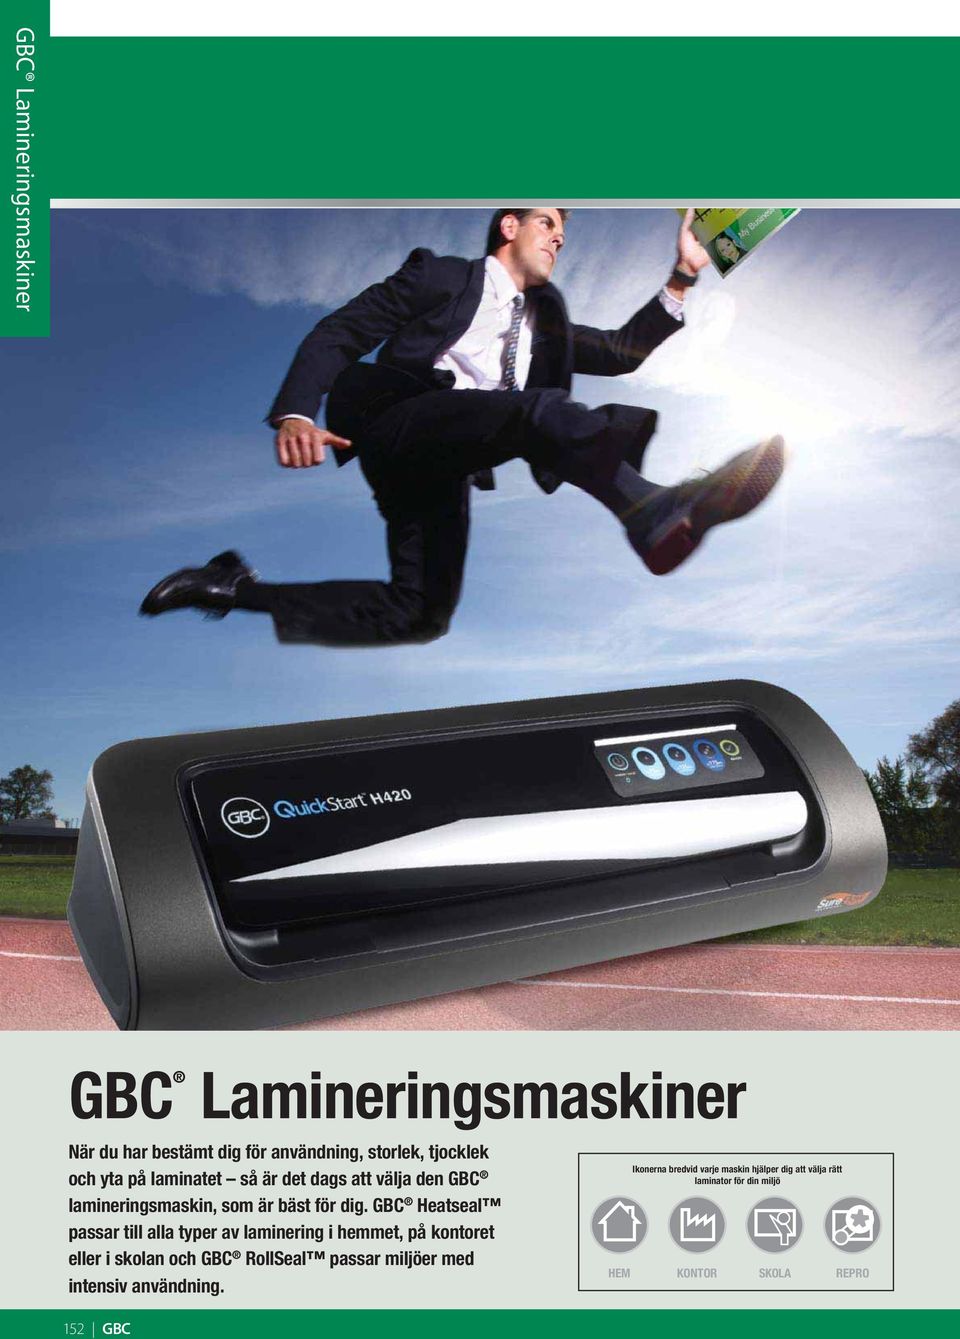 GBC Heatseal passar till alla typer av laminering i hemmet, på kontoret eller i skolan och GBC RollSeal passar